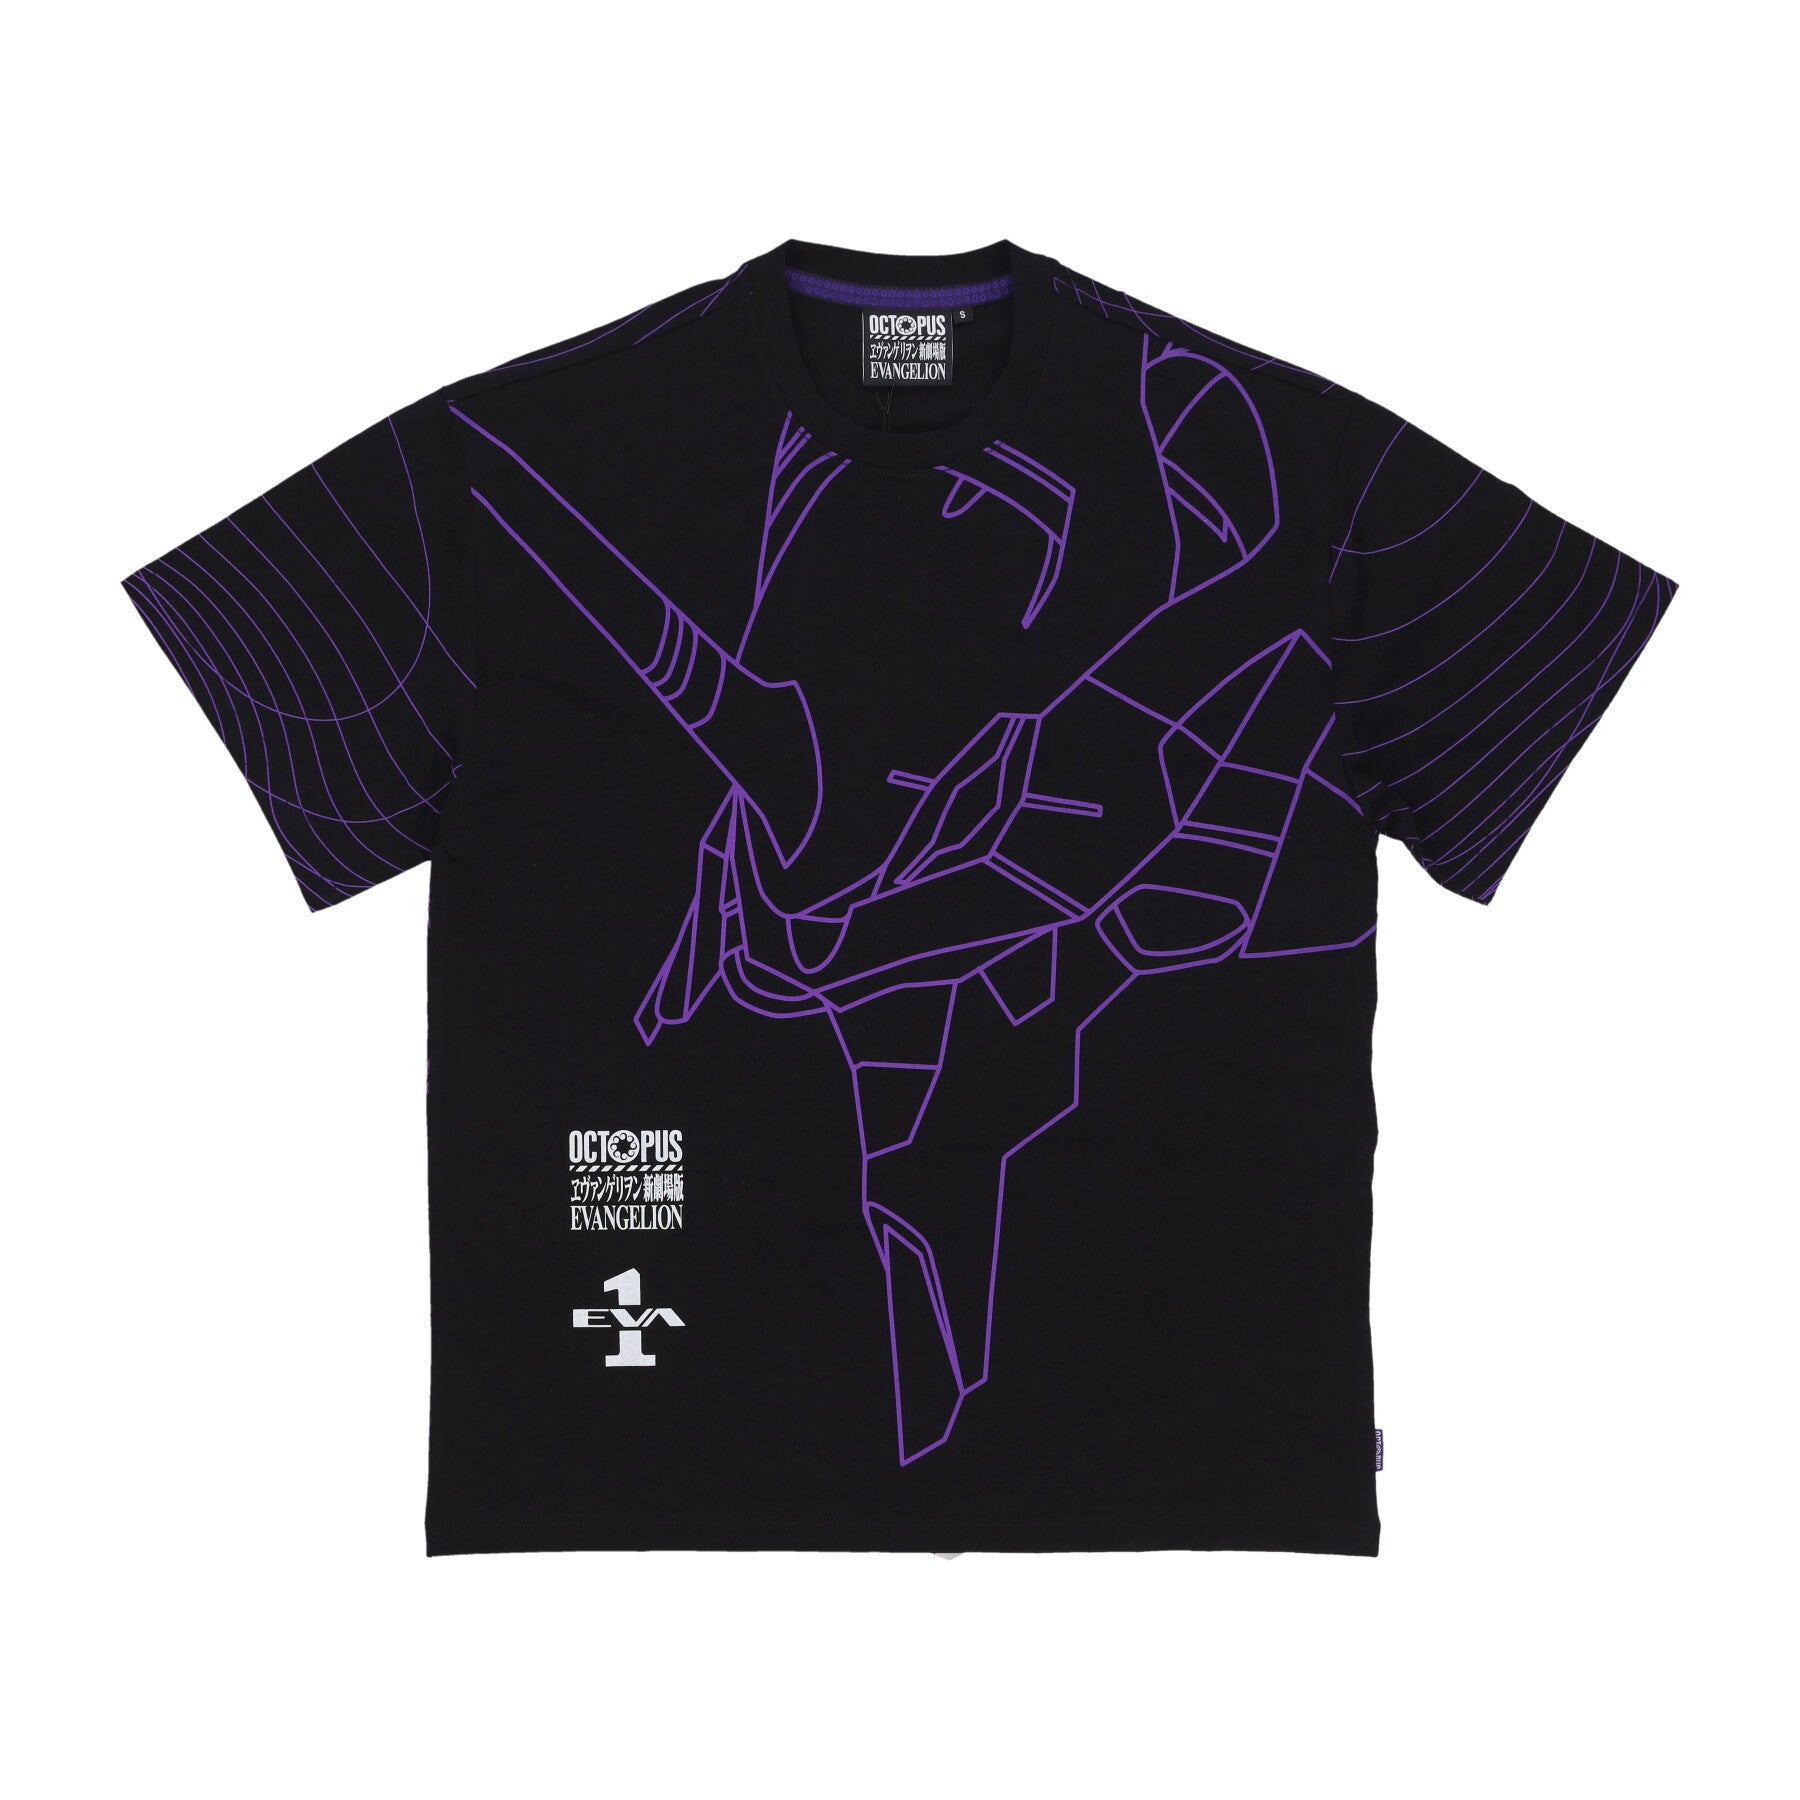 Evangelion 01 Flowing Octopus Tee Black Men's T-Shirt